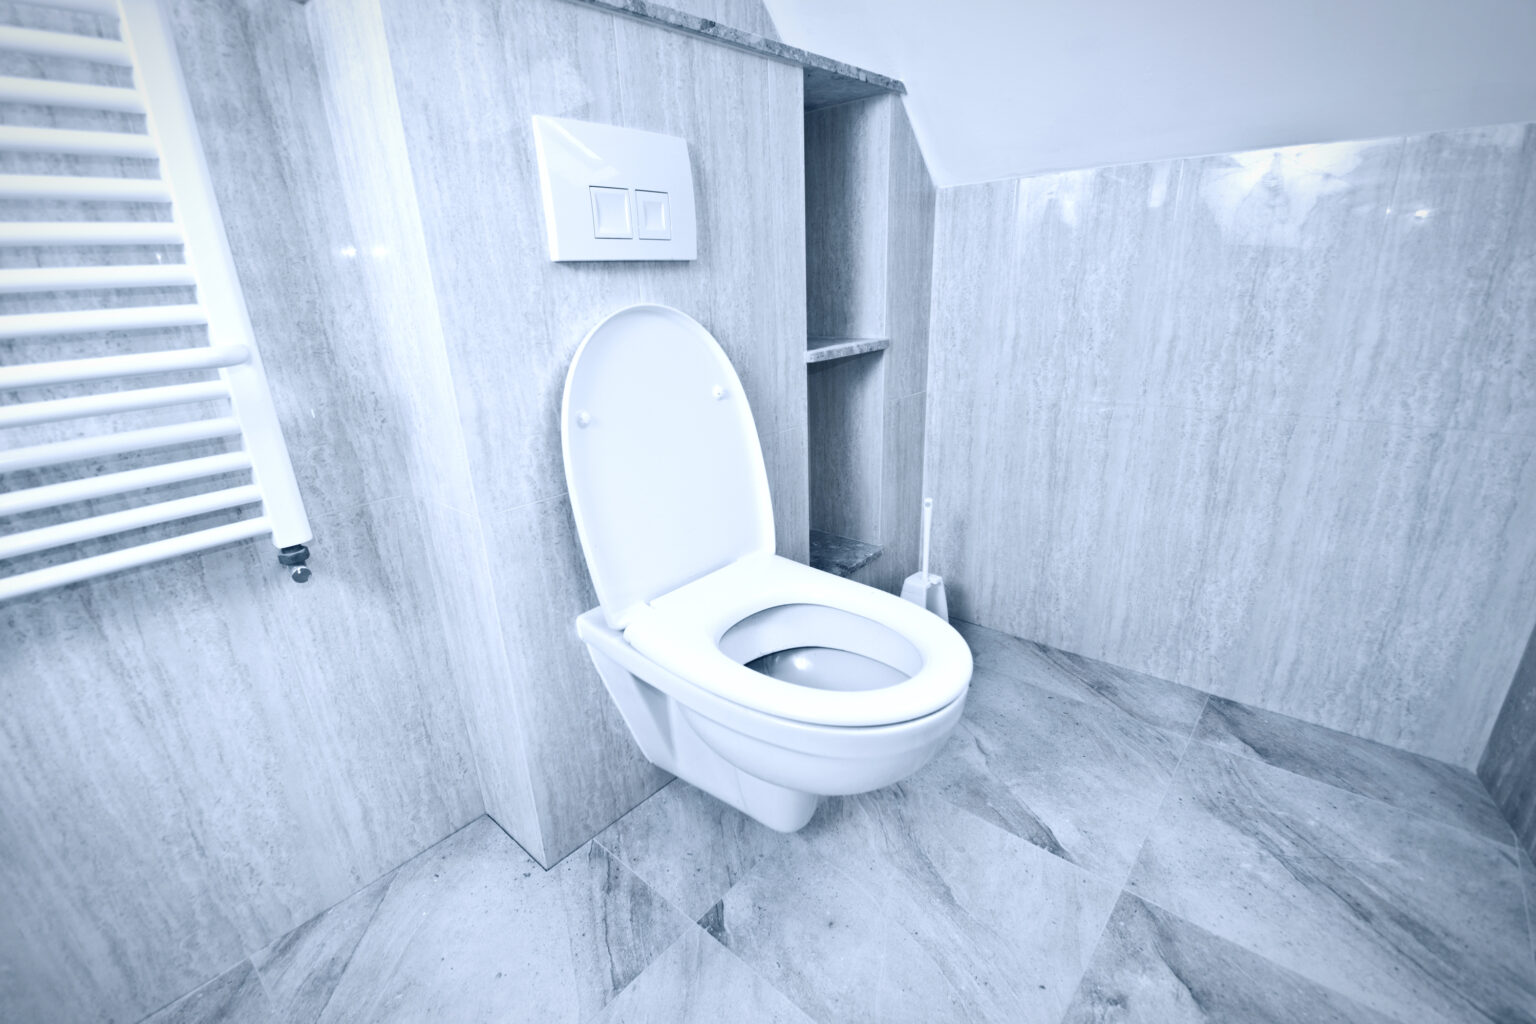 Hebeanlagen für WC: Problemlösungen für die Entwässerung in tiefgelegenen Räumen